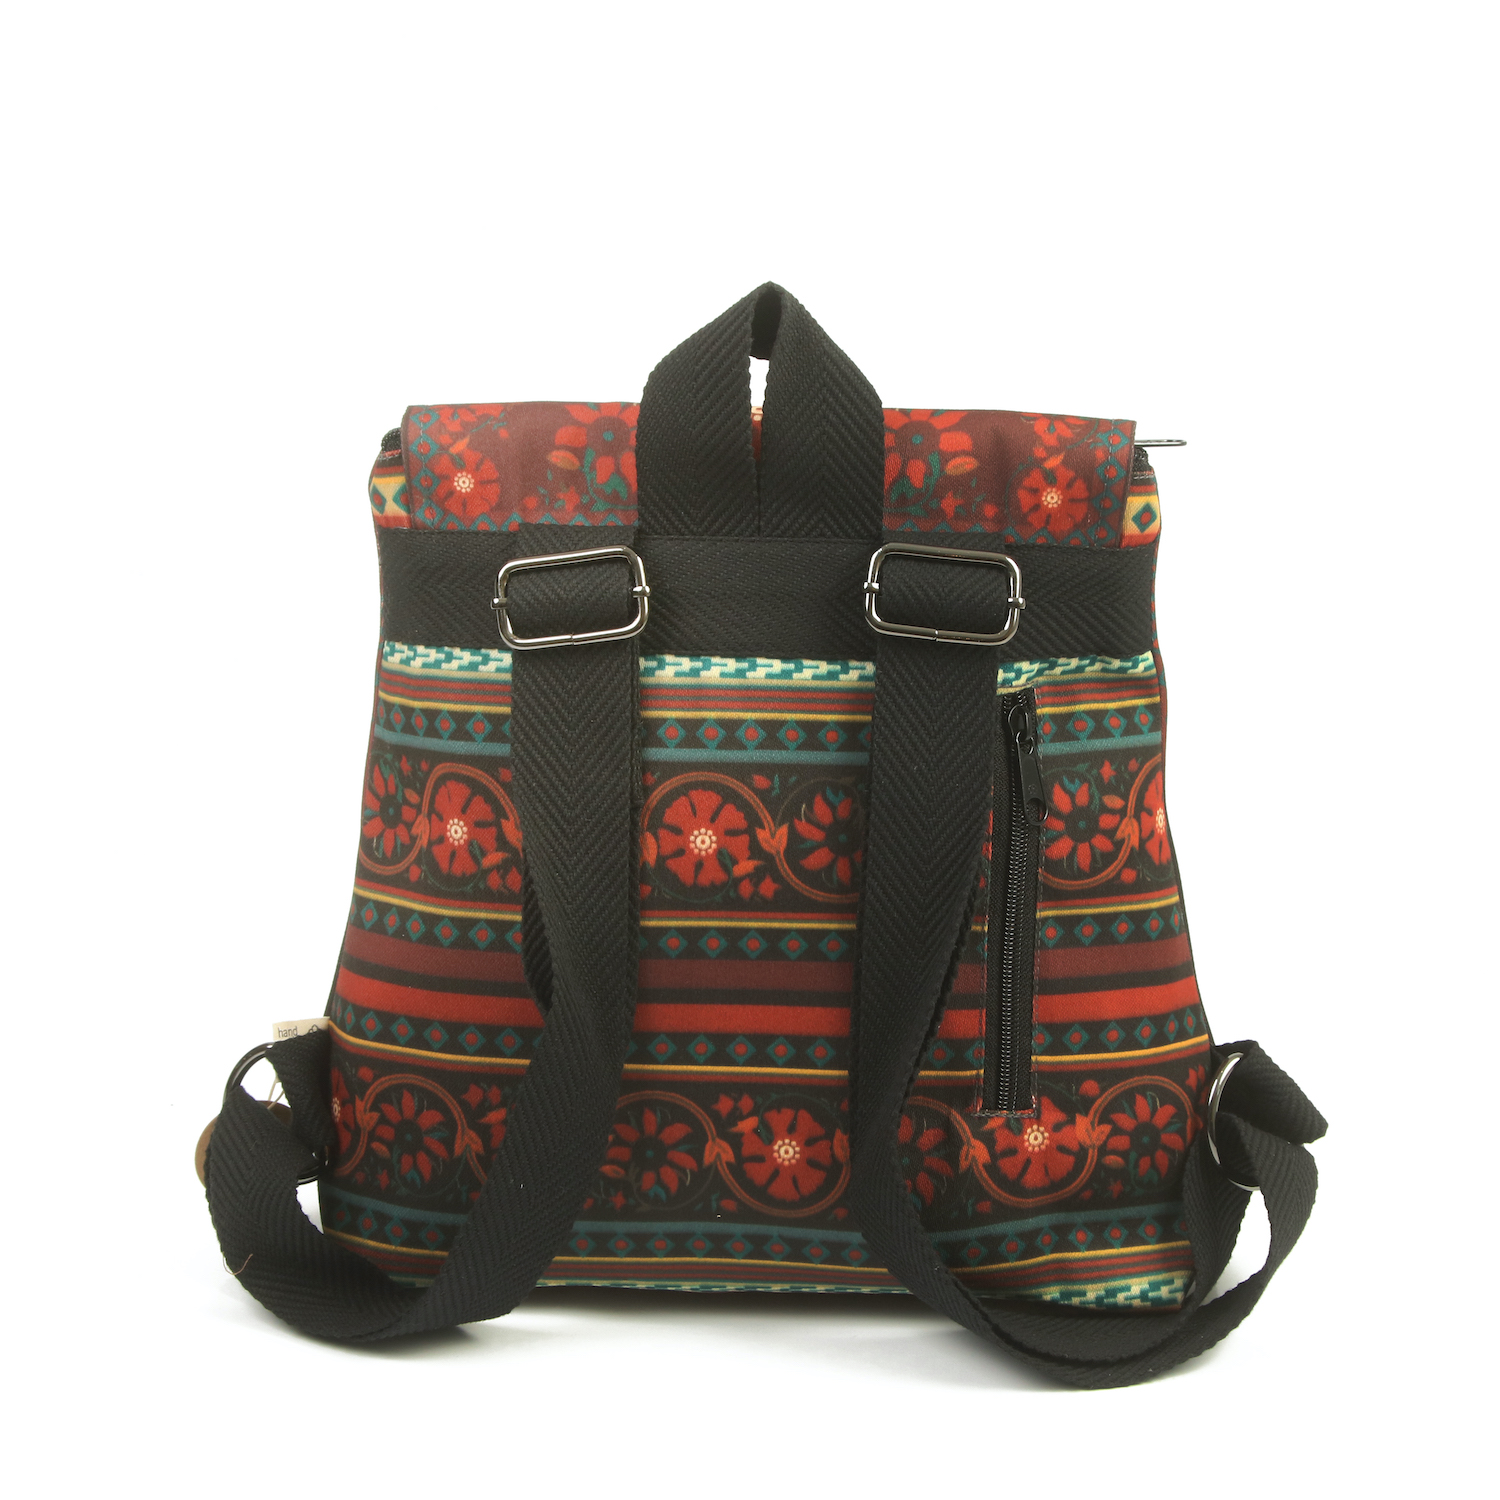 LazyDayz Designs Backpack γυναικείος σάκος πλάτης χειροποίητος bb0304c